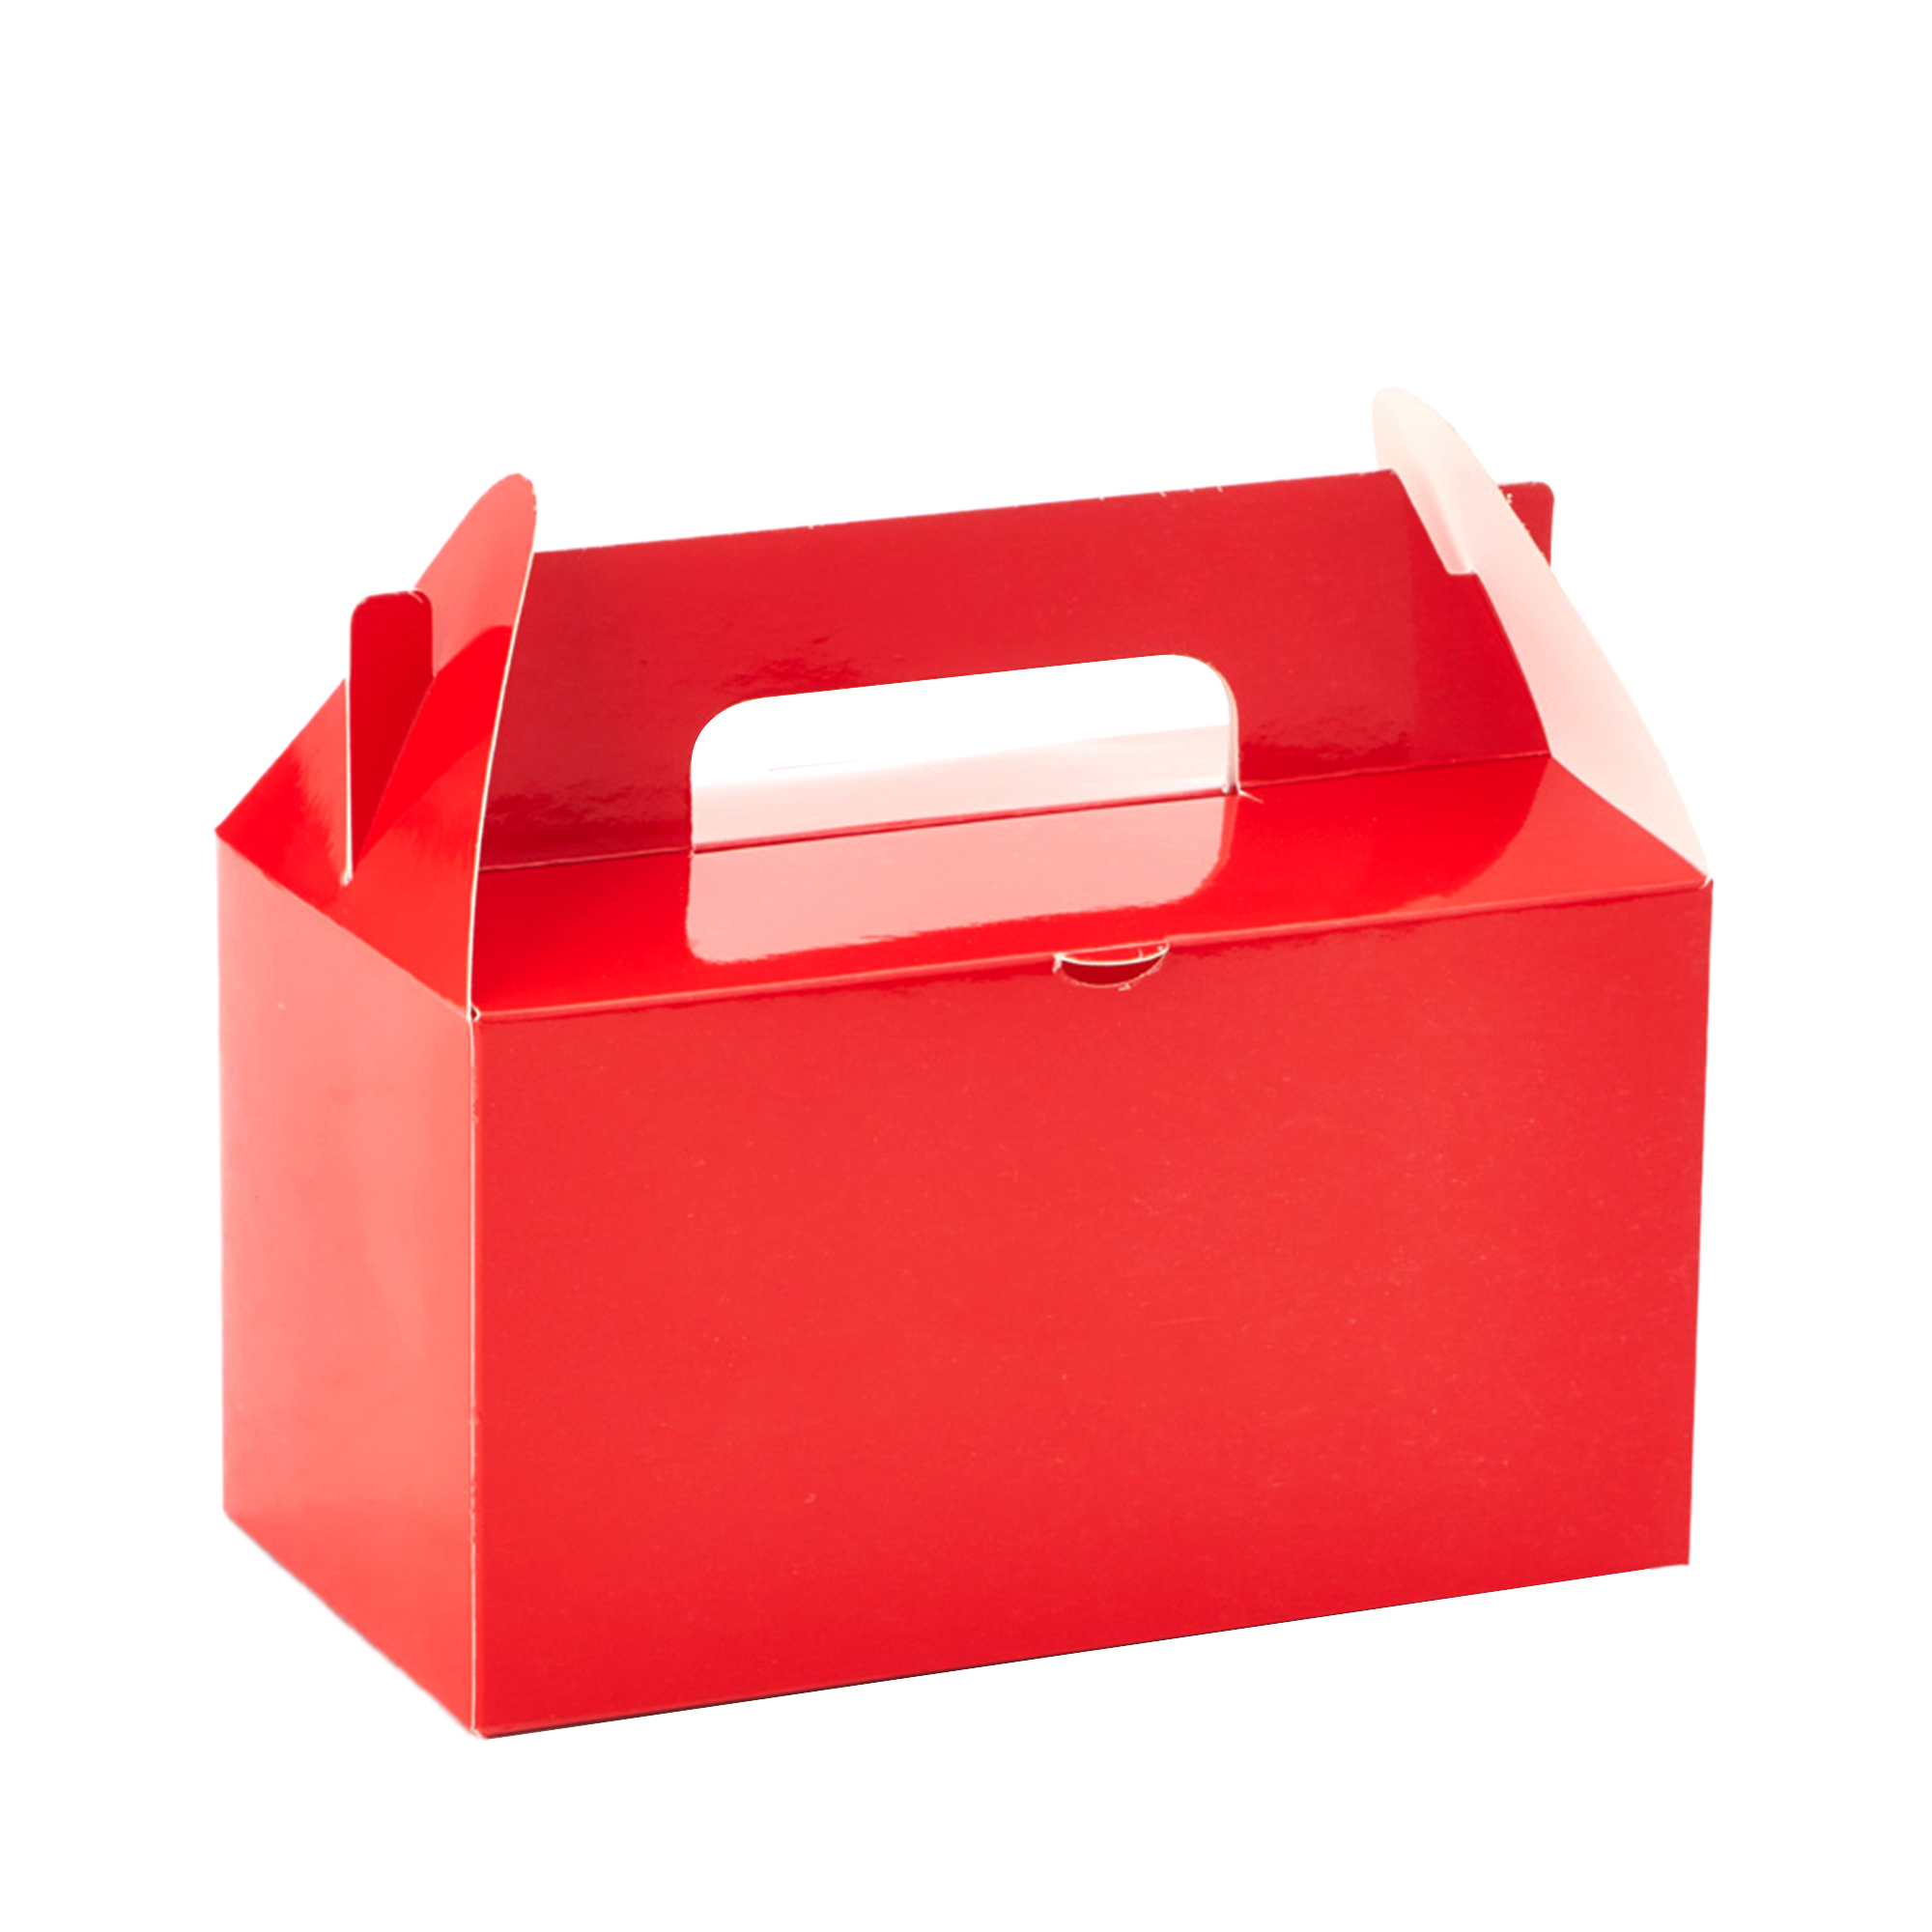 Takeout Box 12pcs/bag - Red